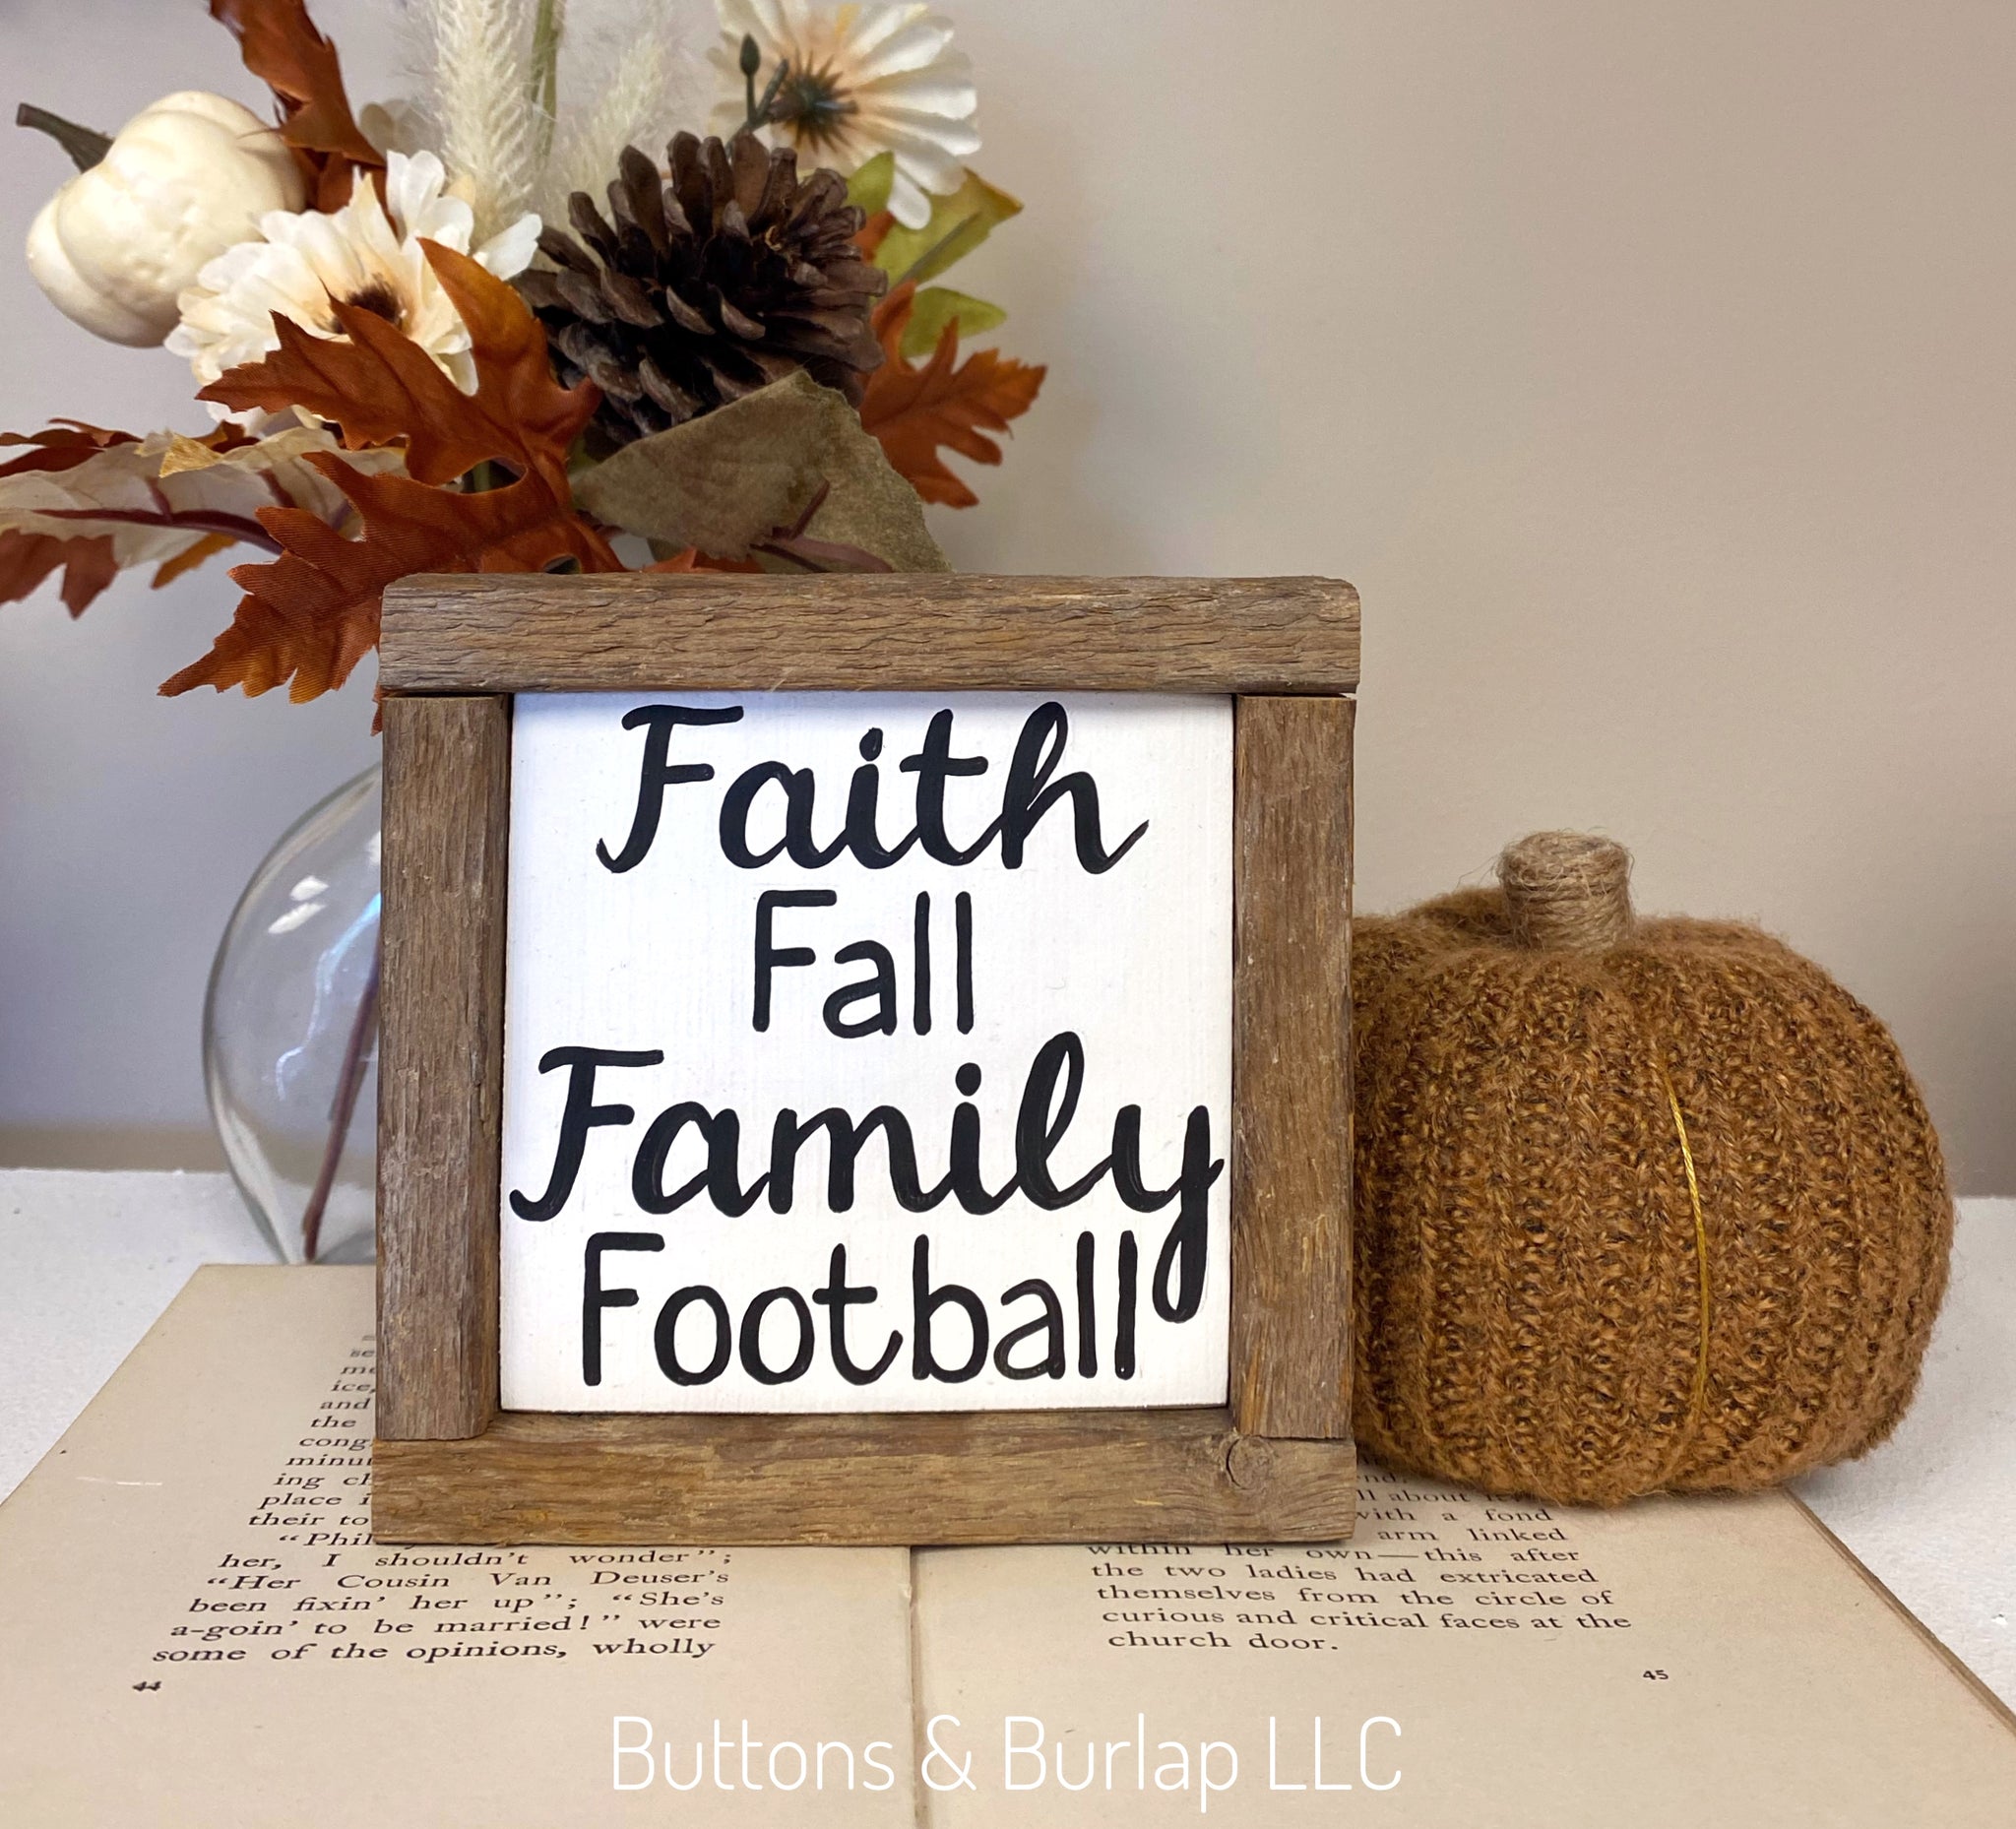 Faith, fall, family, football